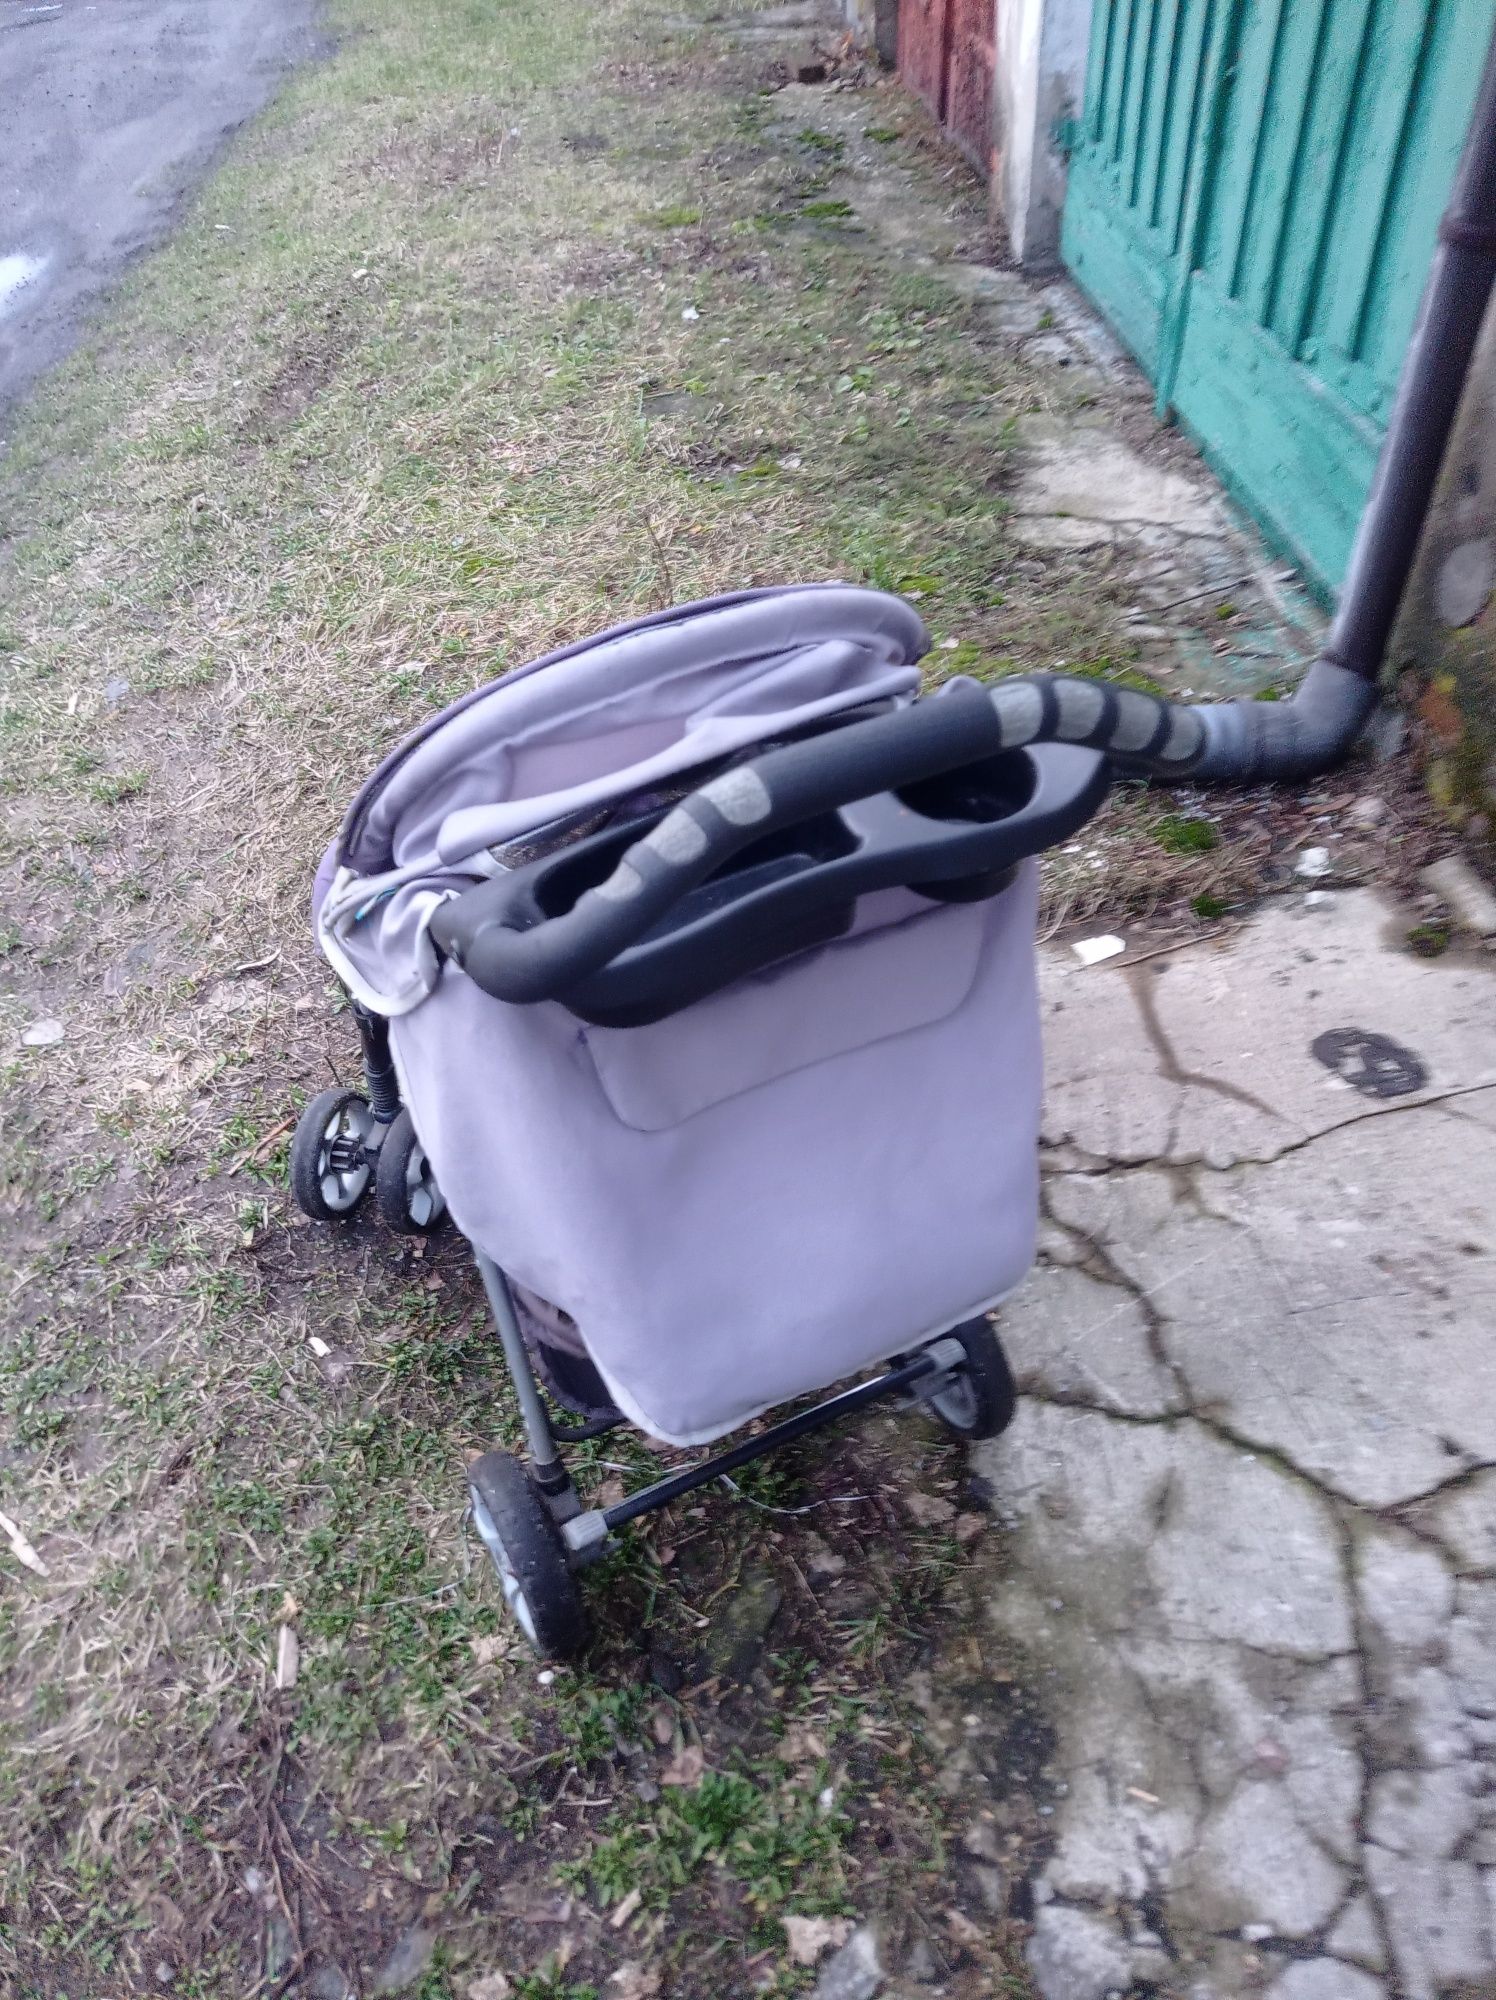 Wózek dziecięcy baby design